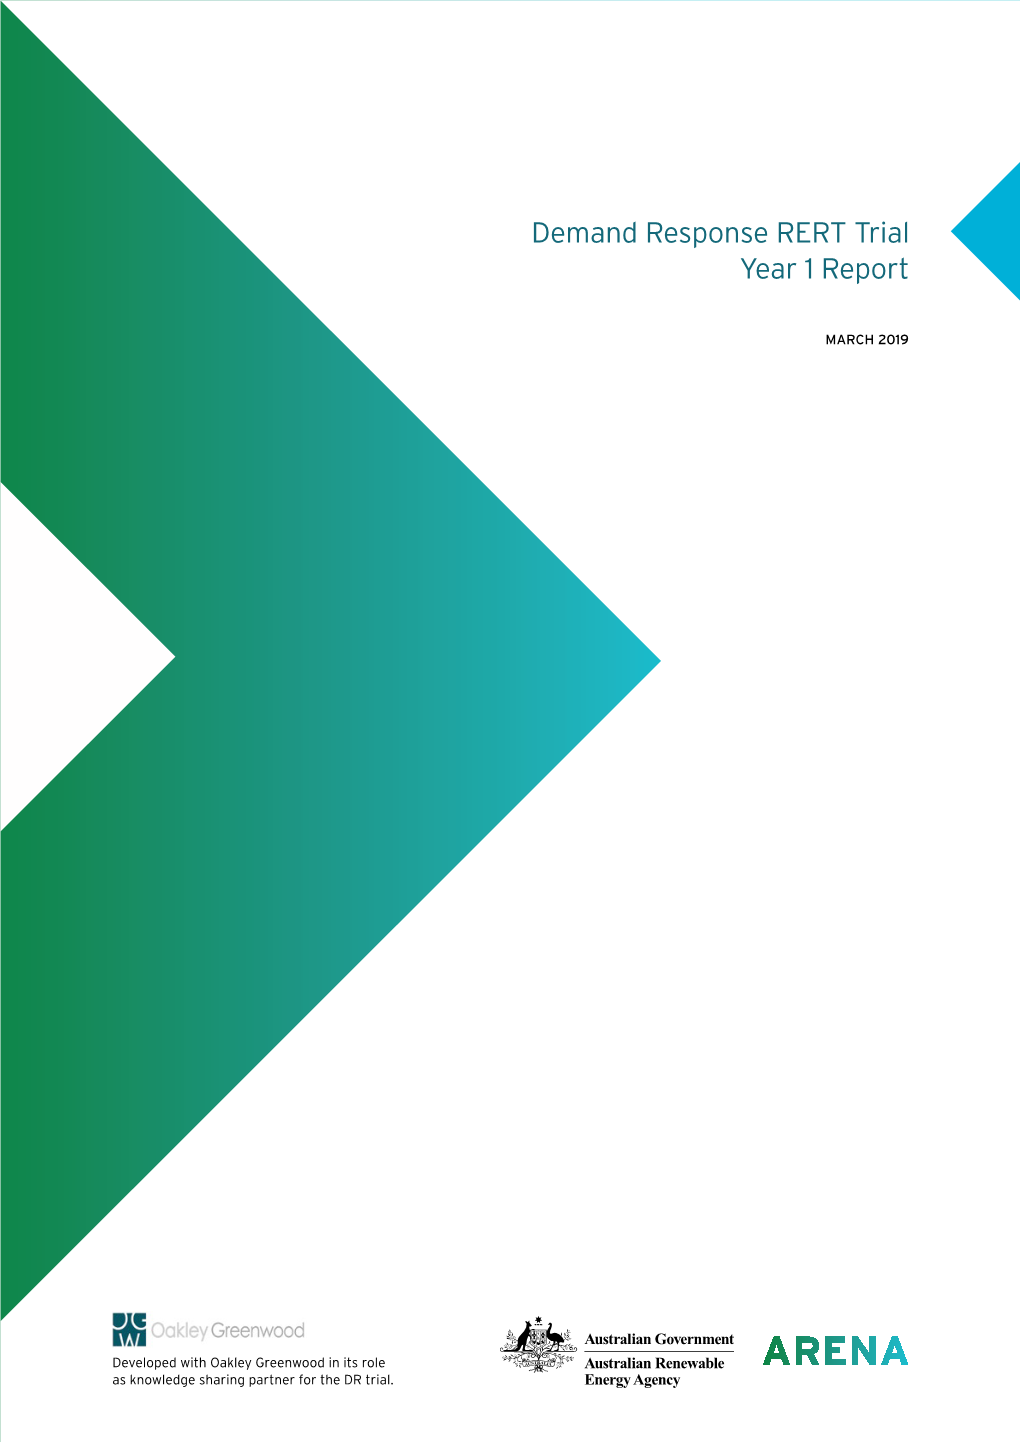 Demand Response RERT Trial Year 1 Report